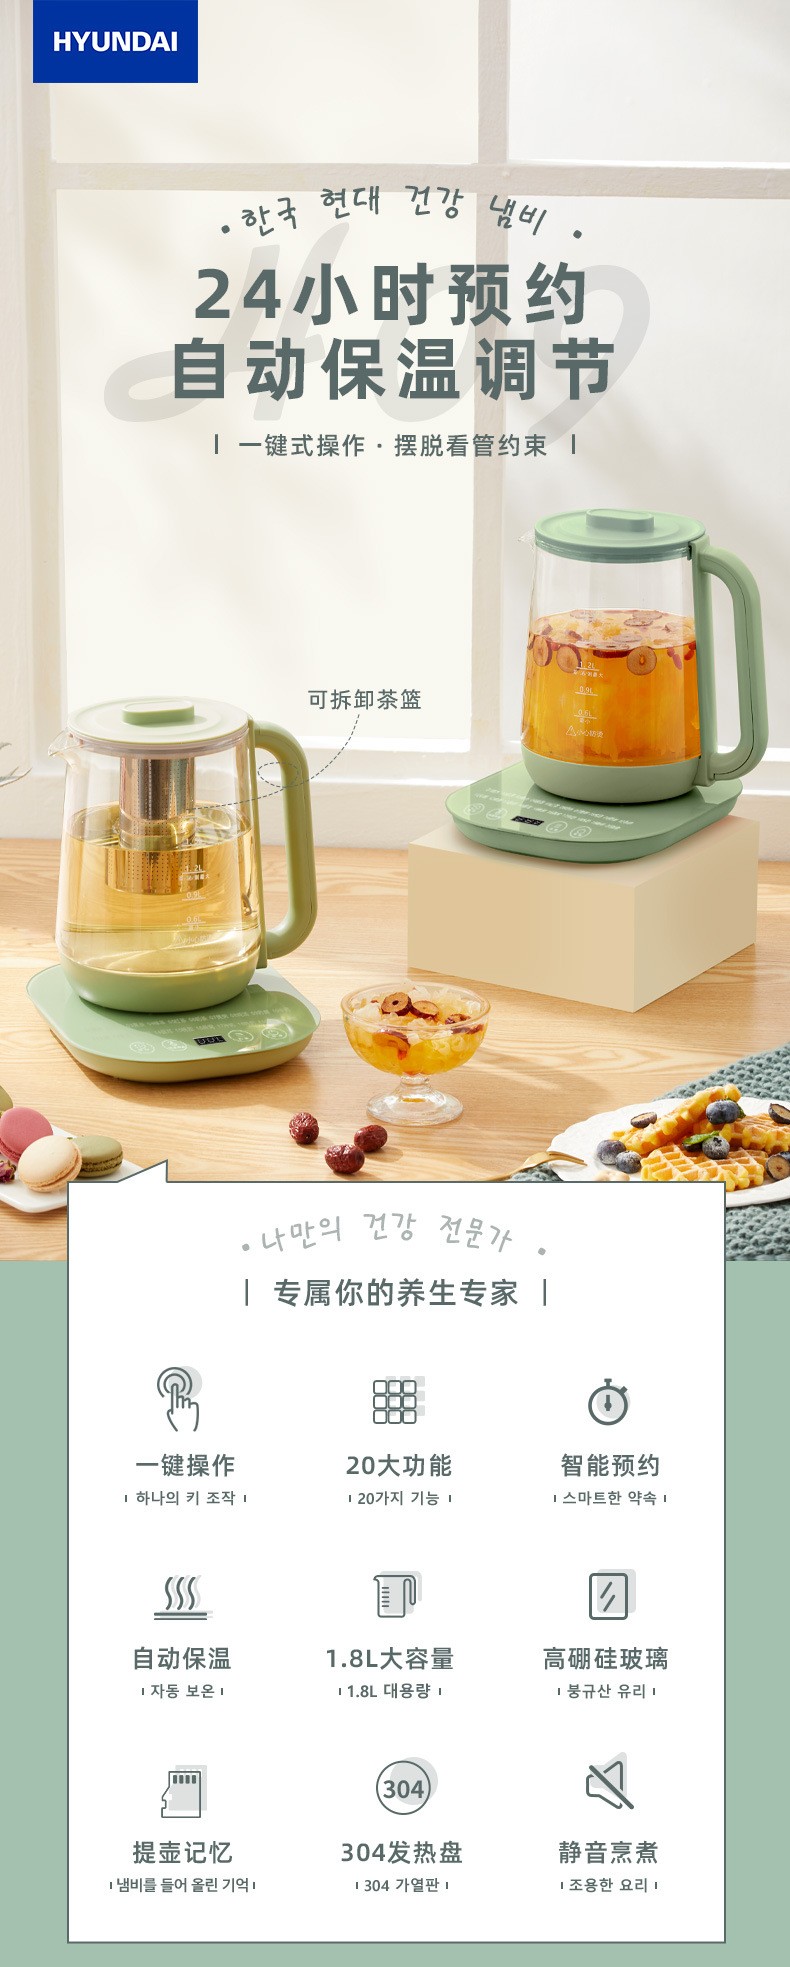 韩国现代触摸式玻璃面板养生壶价格